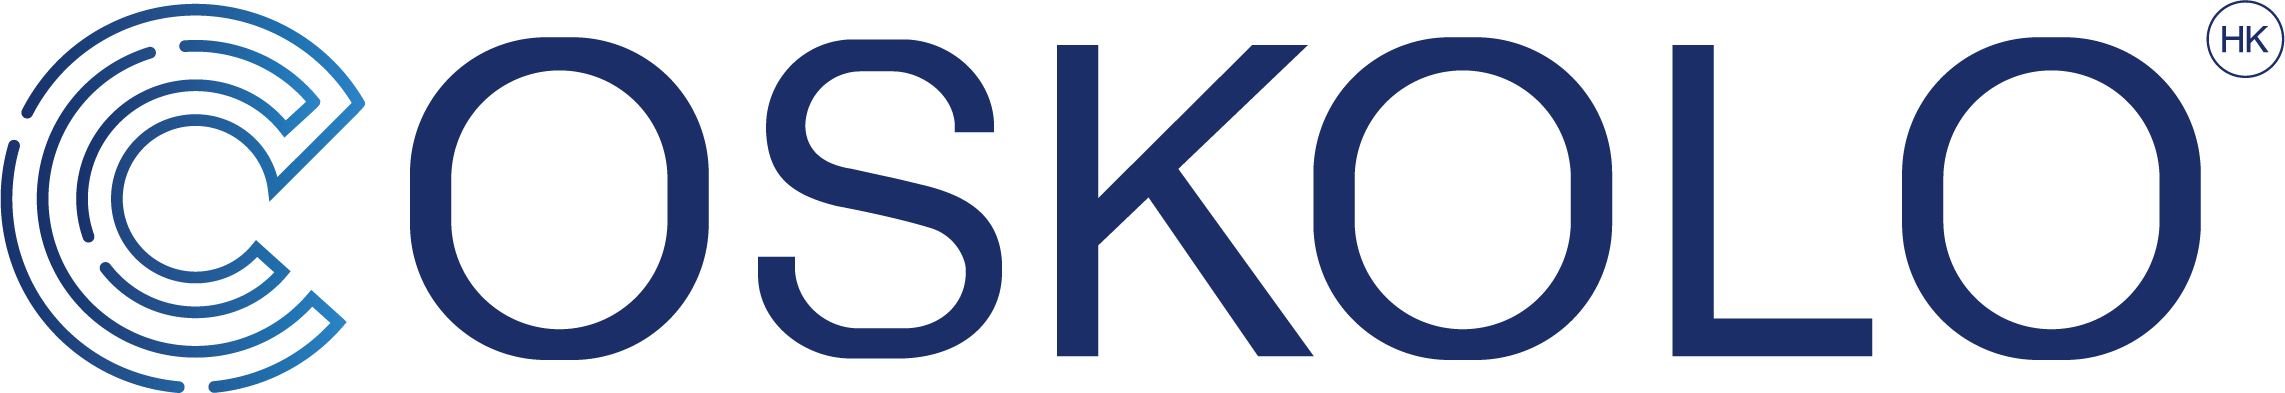 COSKOLO (HK) LIMITED Logo